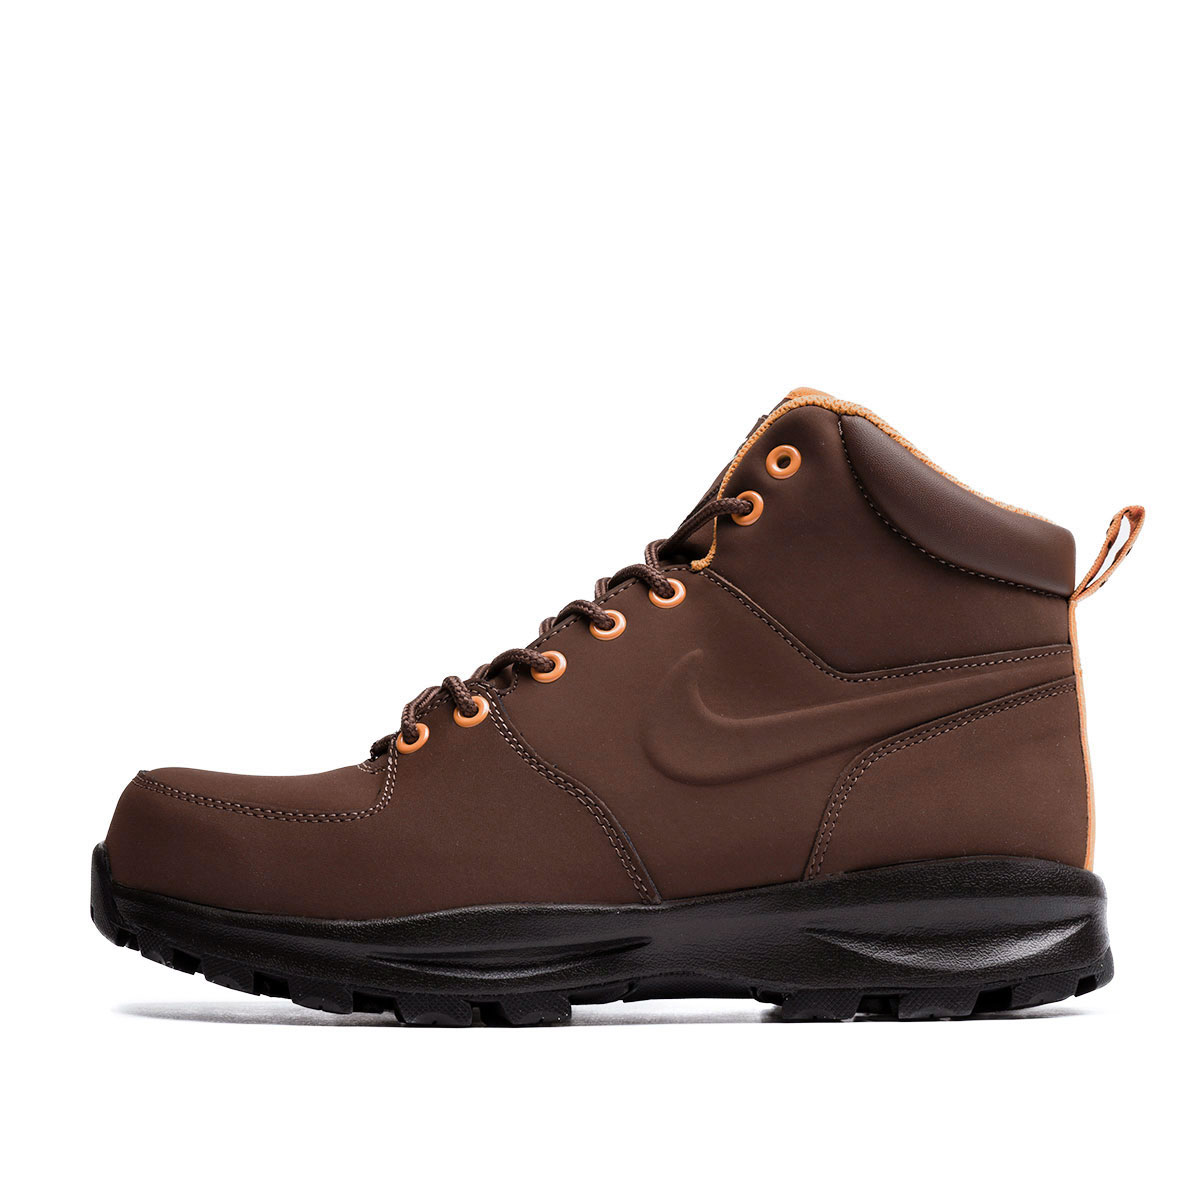 Nike Manoa Leather  454350-203